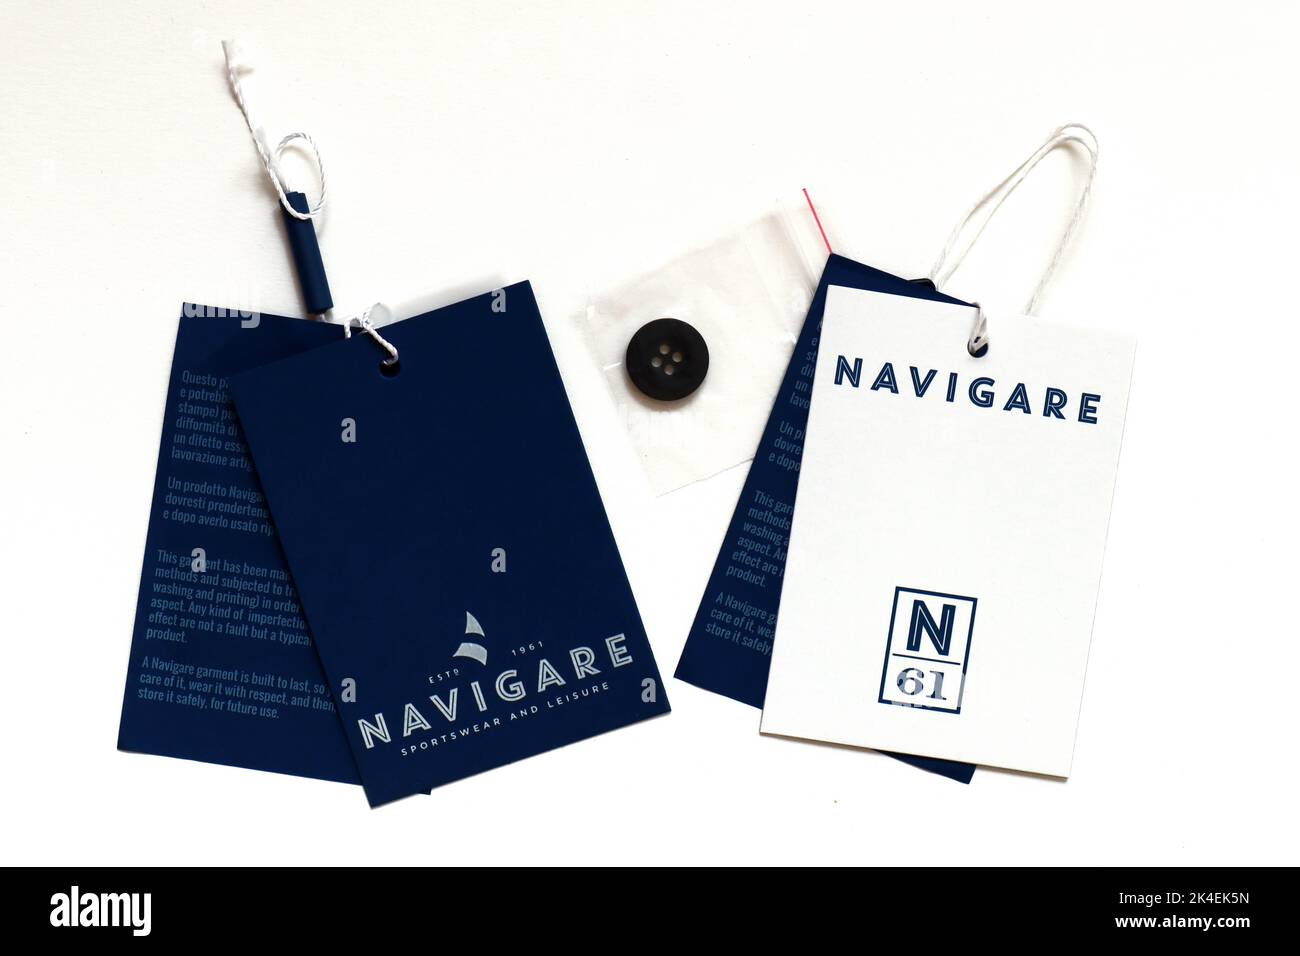 Etiquetas de la ropa DE NAVIGARE. Navigare es una marca de moda italiana de  Sportswear y Leisure de N61 S.r.l. - Italia Fotografía de stock - Alamy